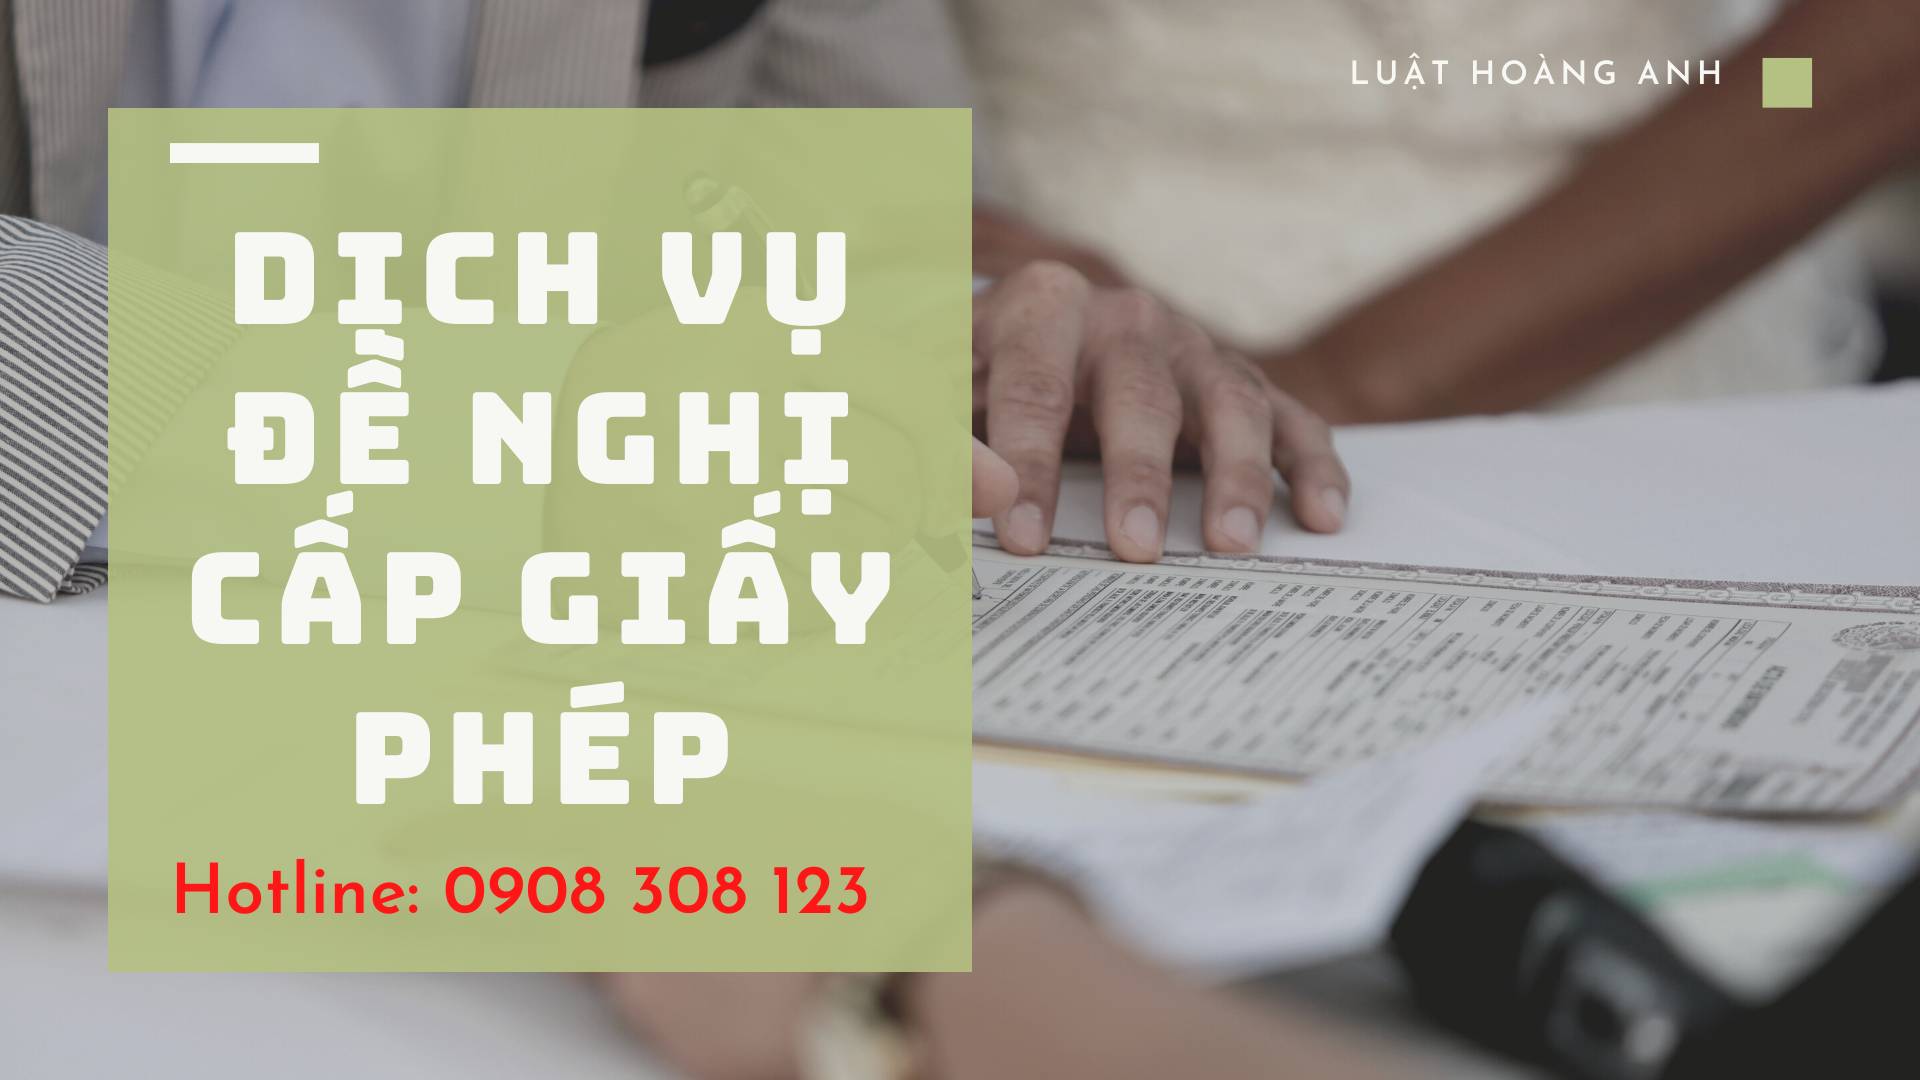 Dịch vụ xin giấy phép quảng cáo thuốc nhanh tại tỉnh Thanh Hóa